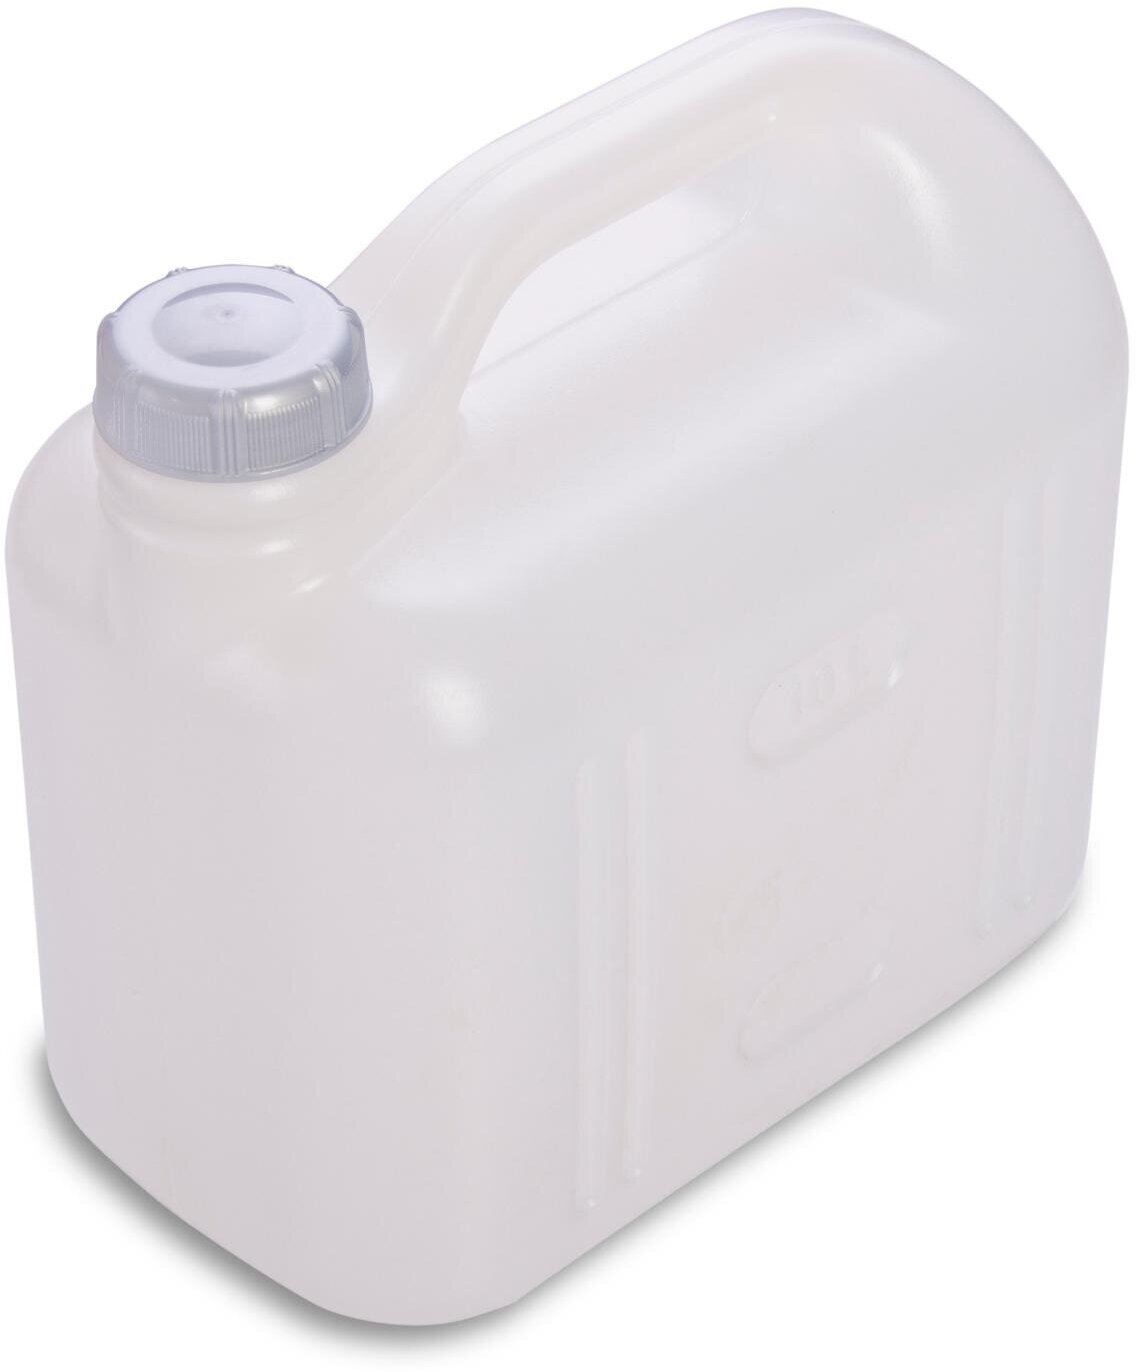 Канистра 10 л, белая, герметичная тара незаменима для удобной транспортировки различных жидкостей: соков, воды, молочной продукции, этилового спирта, олифы.